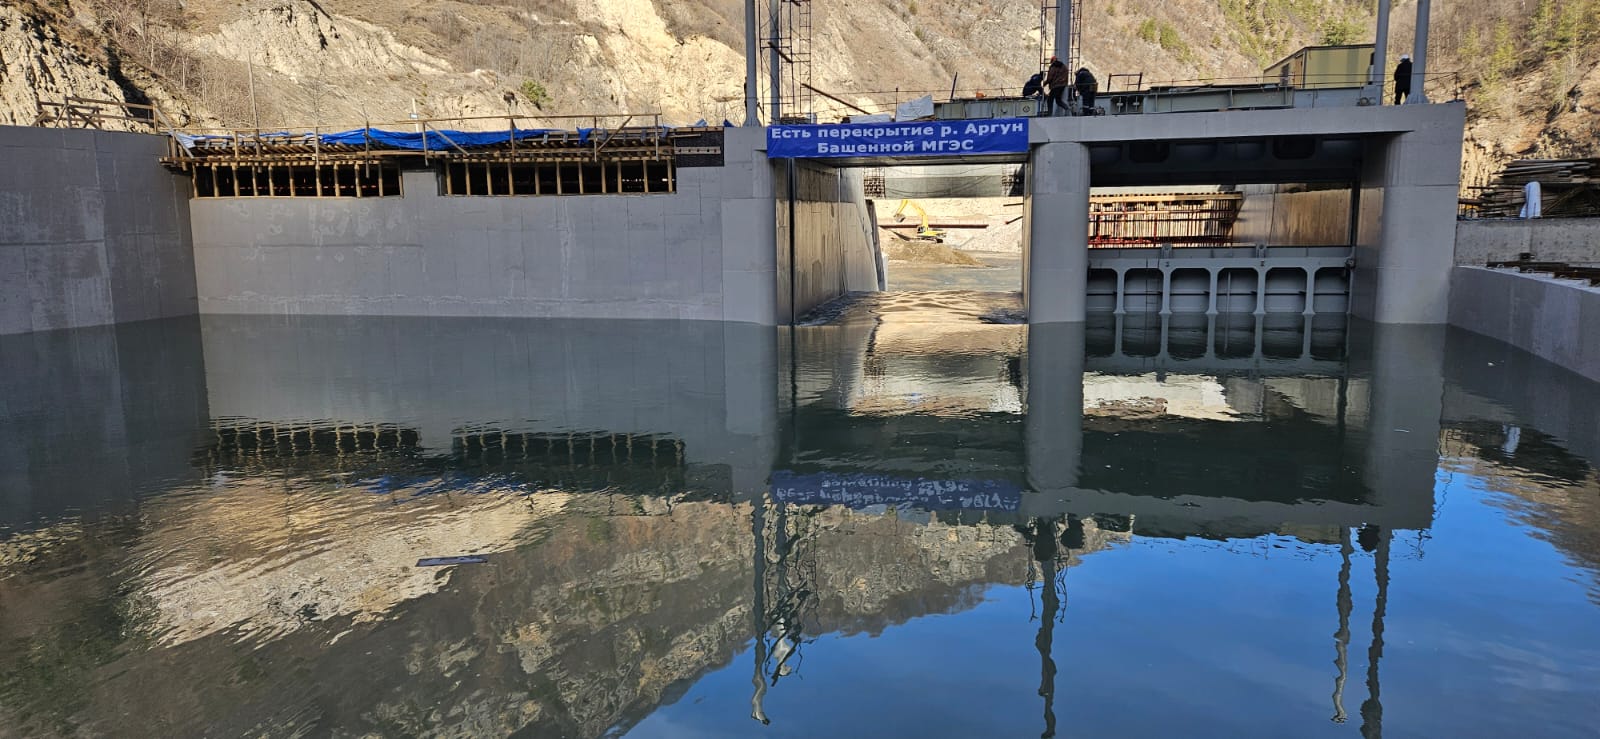 Перекрыта река Аргун для строительства Башенной МГЭС (РусГидро)